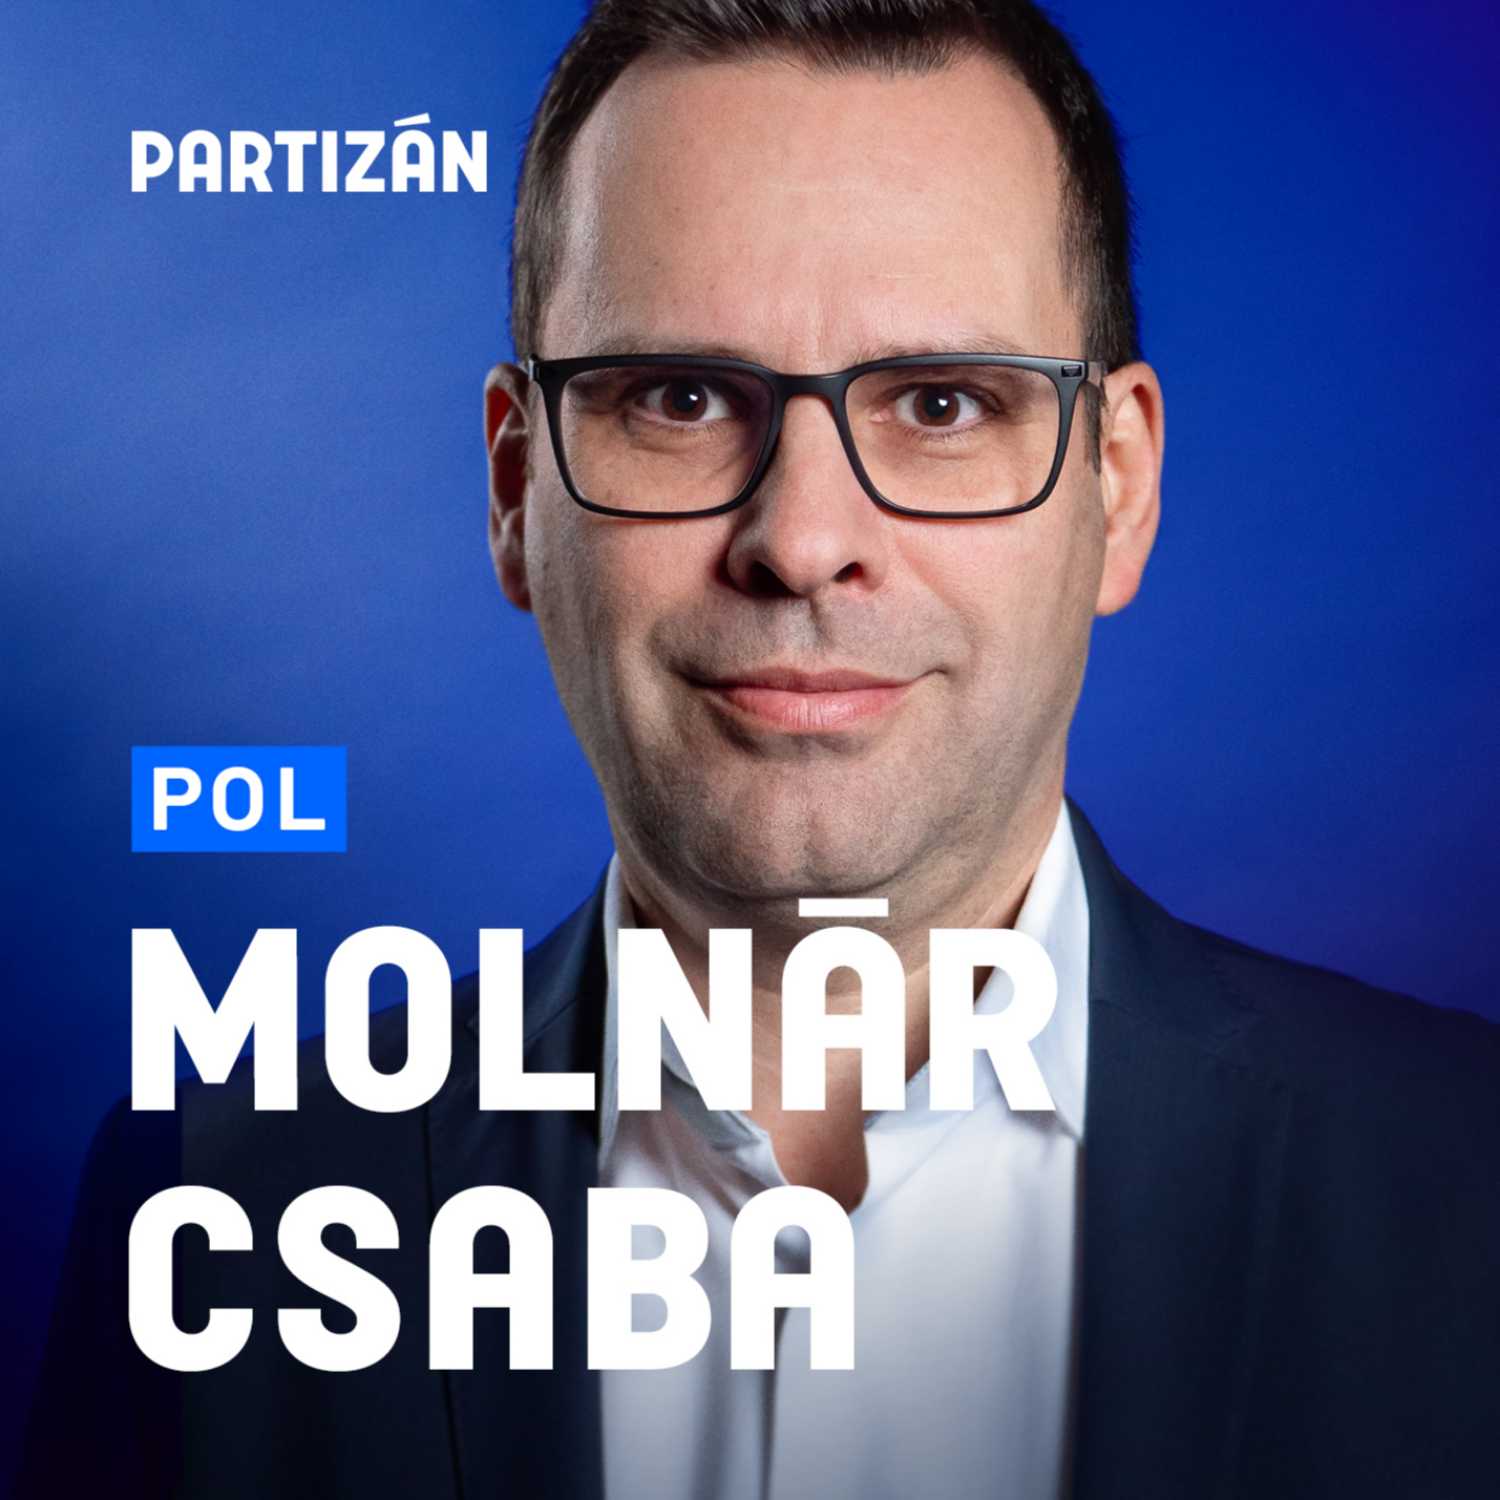 Molnár Csaba: “Nem kellett volna a neoliberalizmussal megalkudnunk” - interjú a DK második emberével